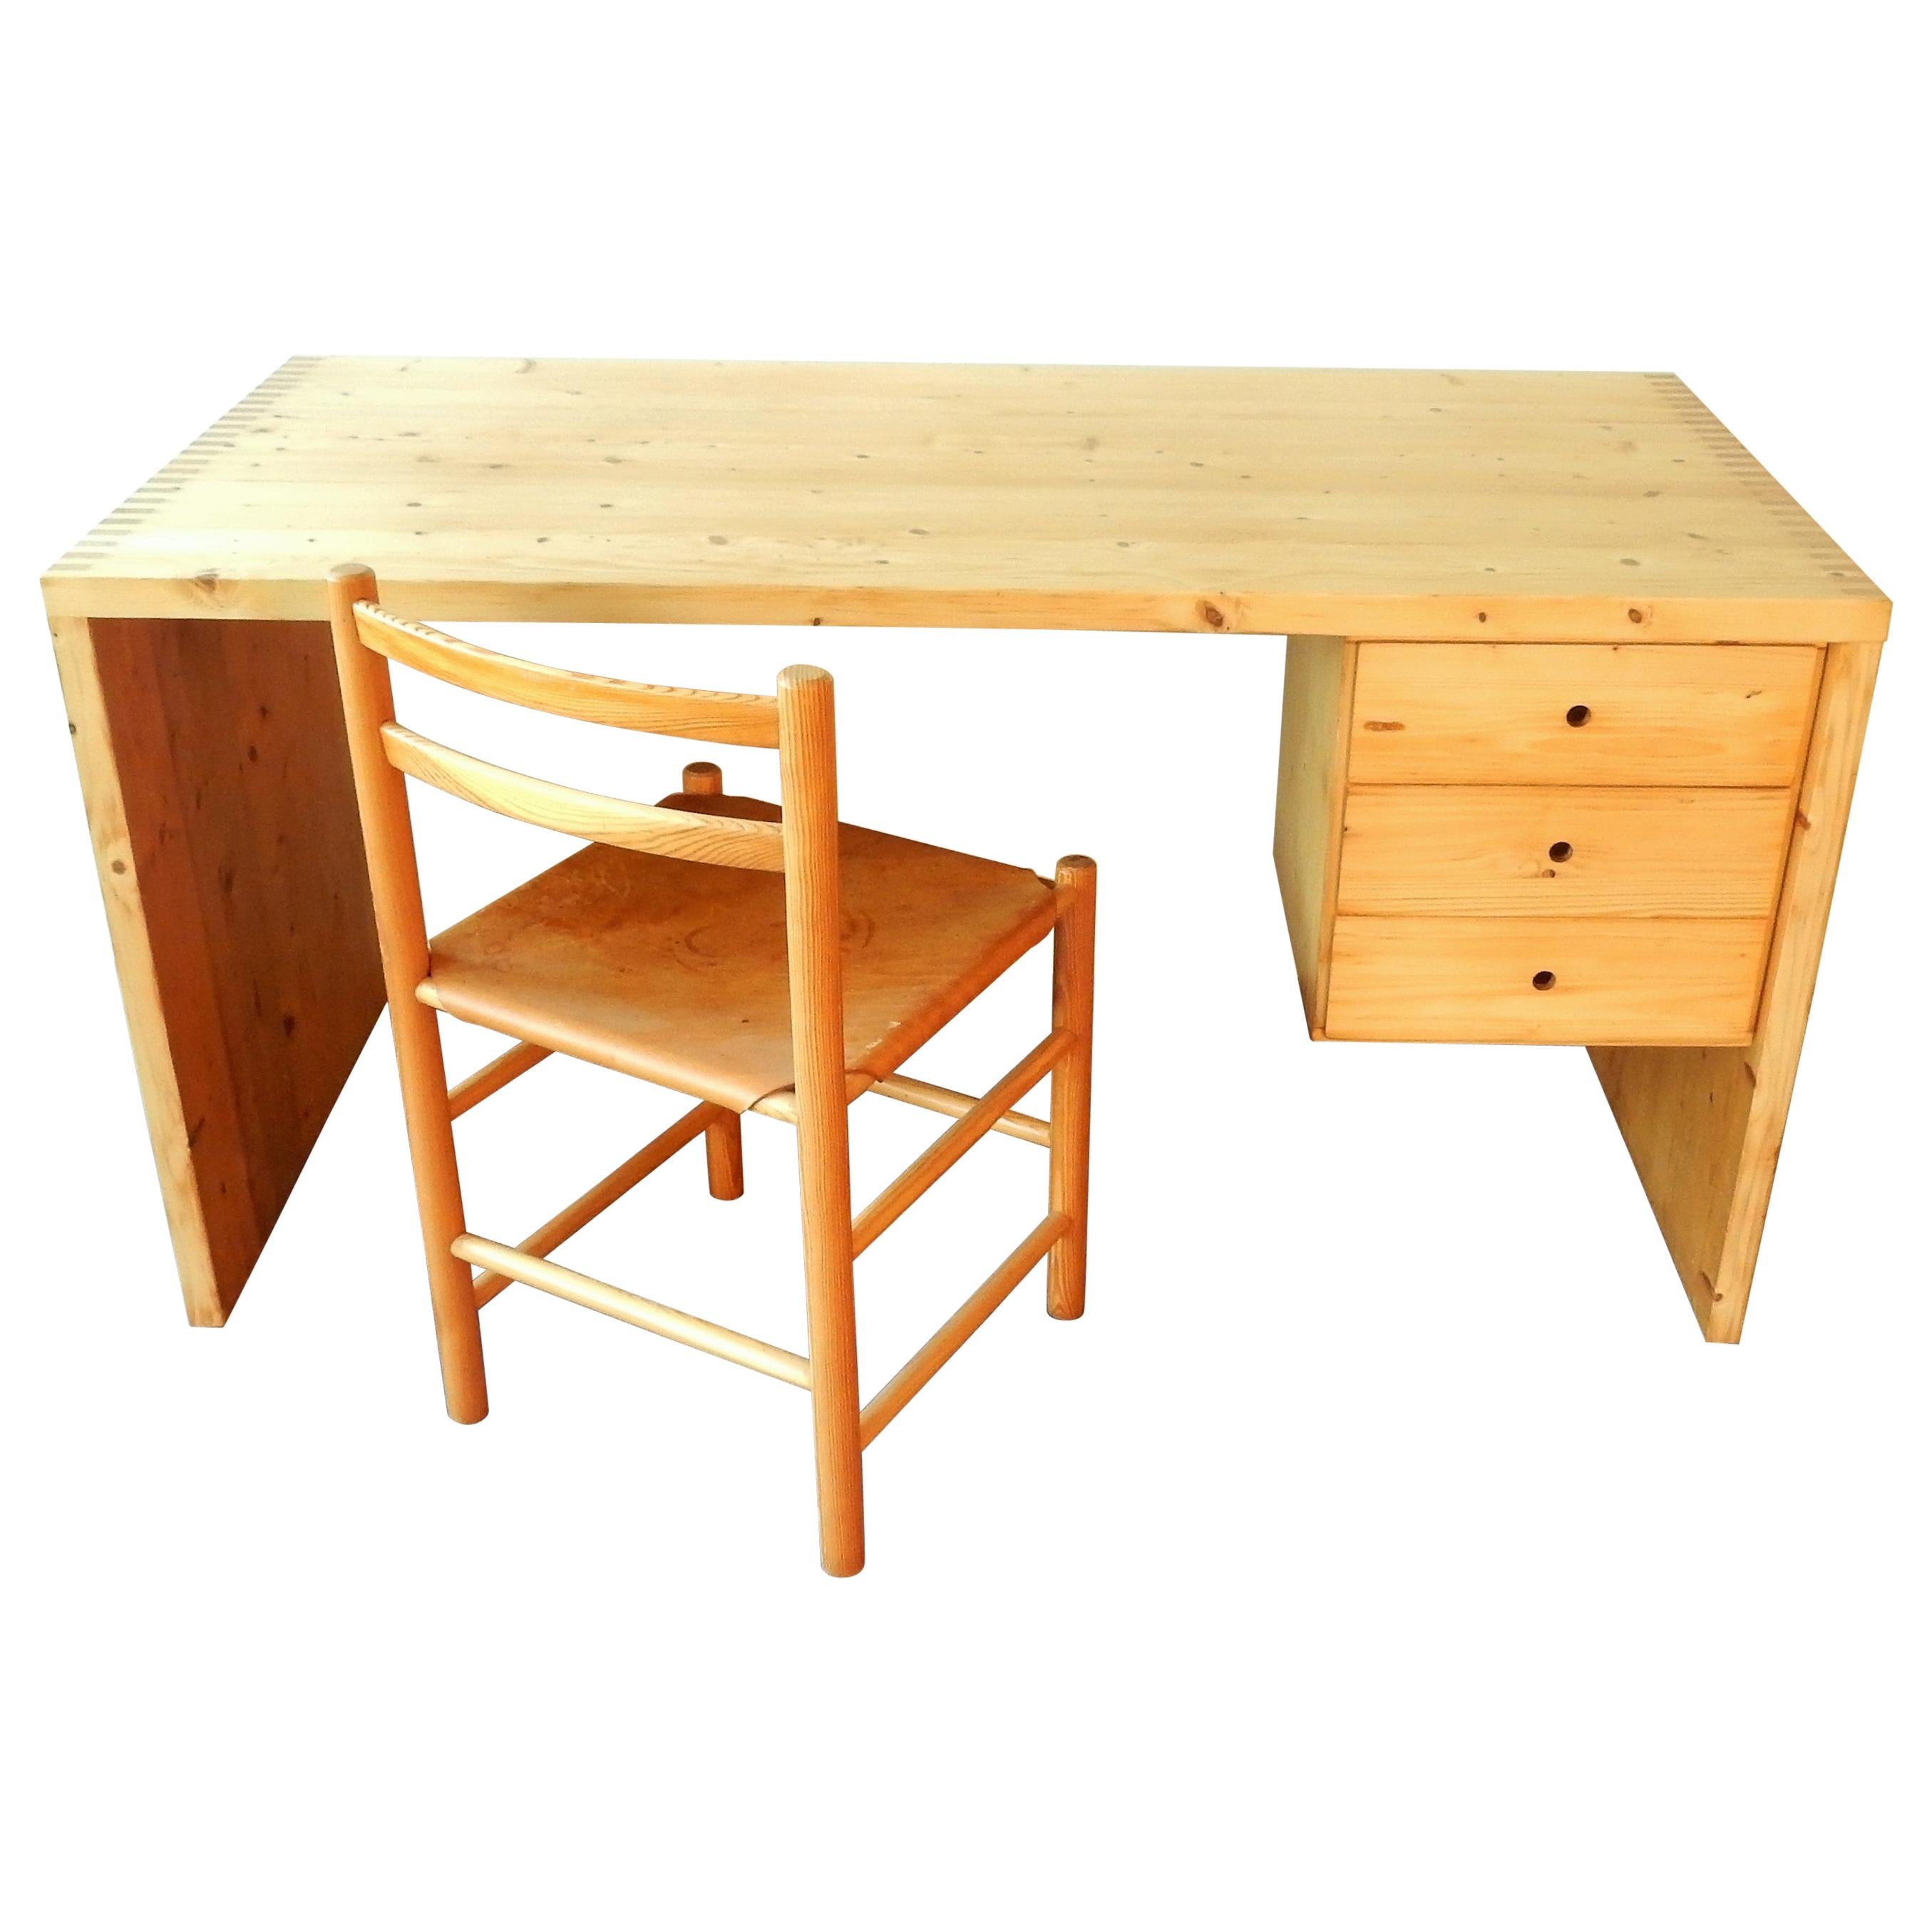 Pine Wood Writing Desk Set by Ate Van Apeldoorn for Houtwerk Hattem